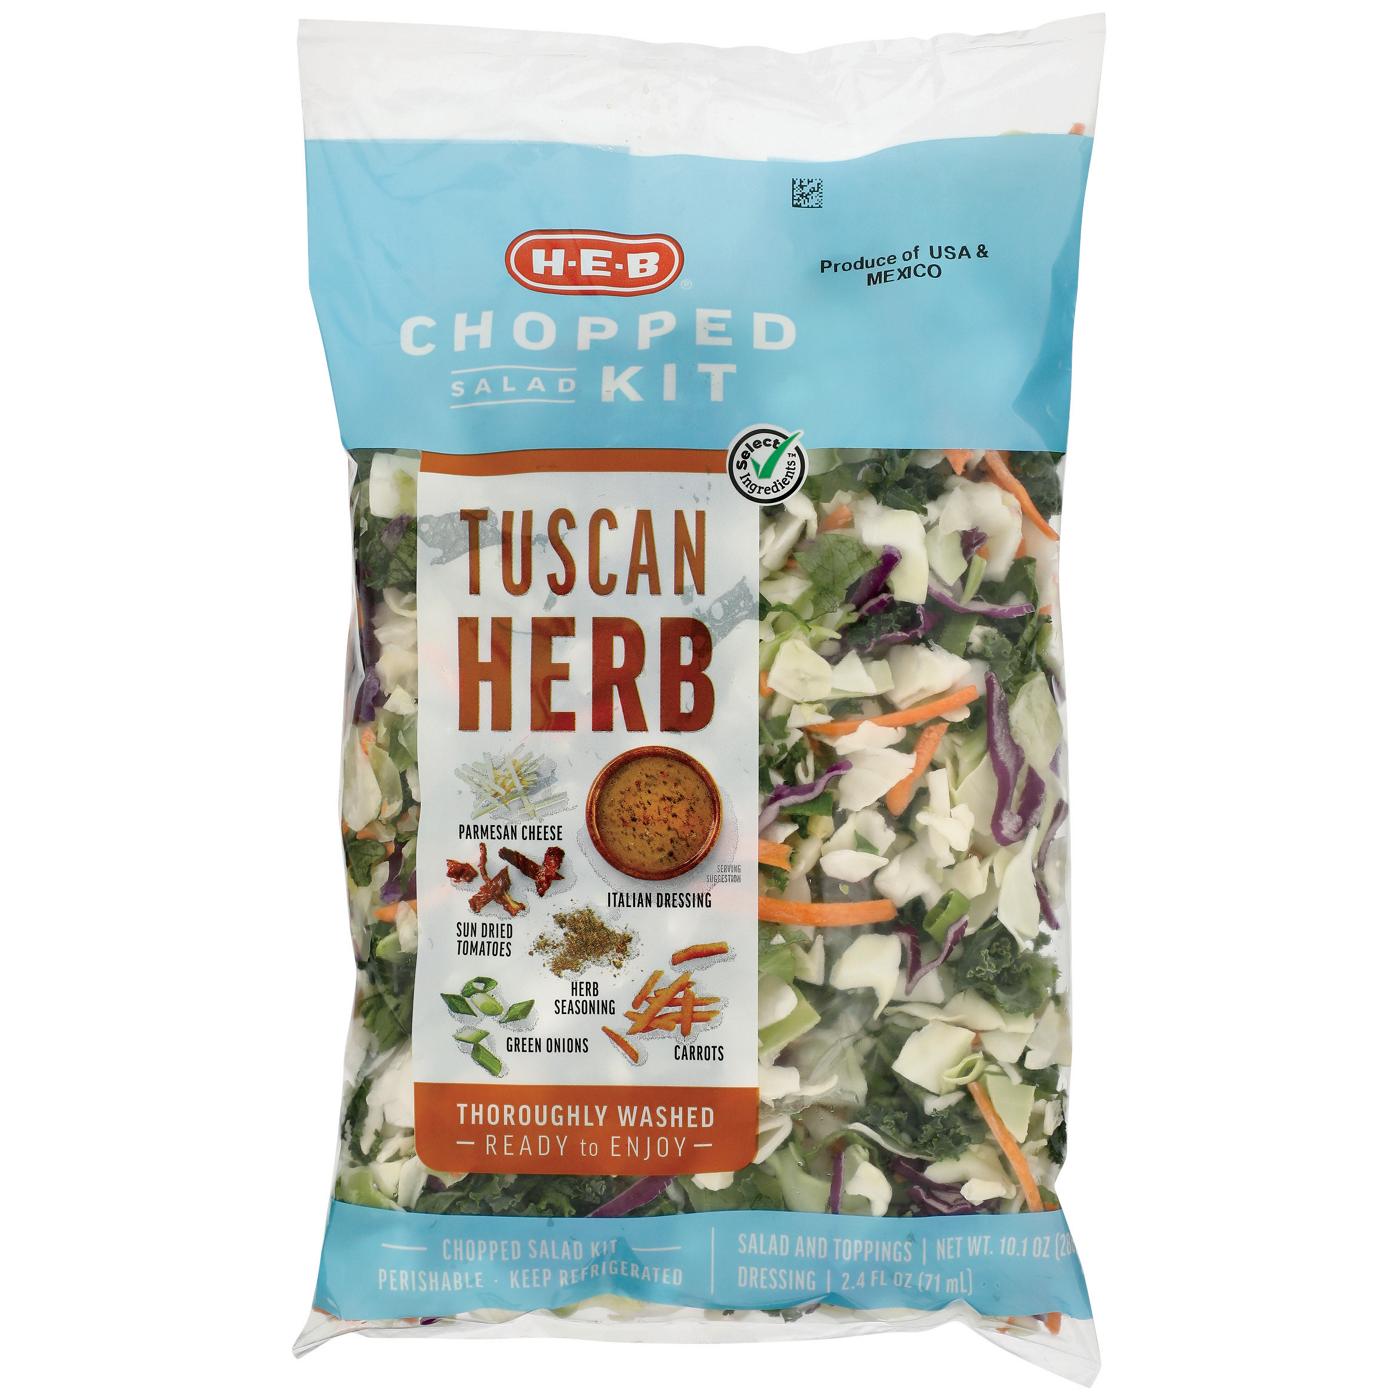 H-E-B Chopped Salad Kit - Tuscan Herb; image 1 of 4